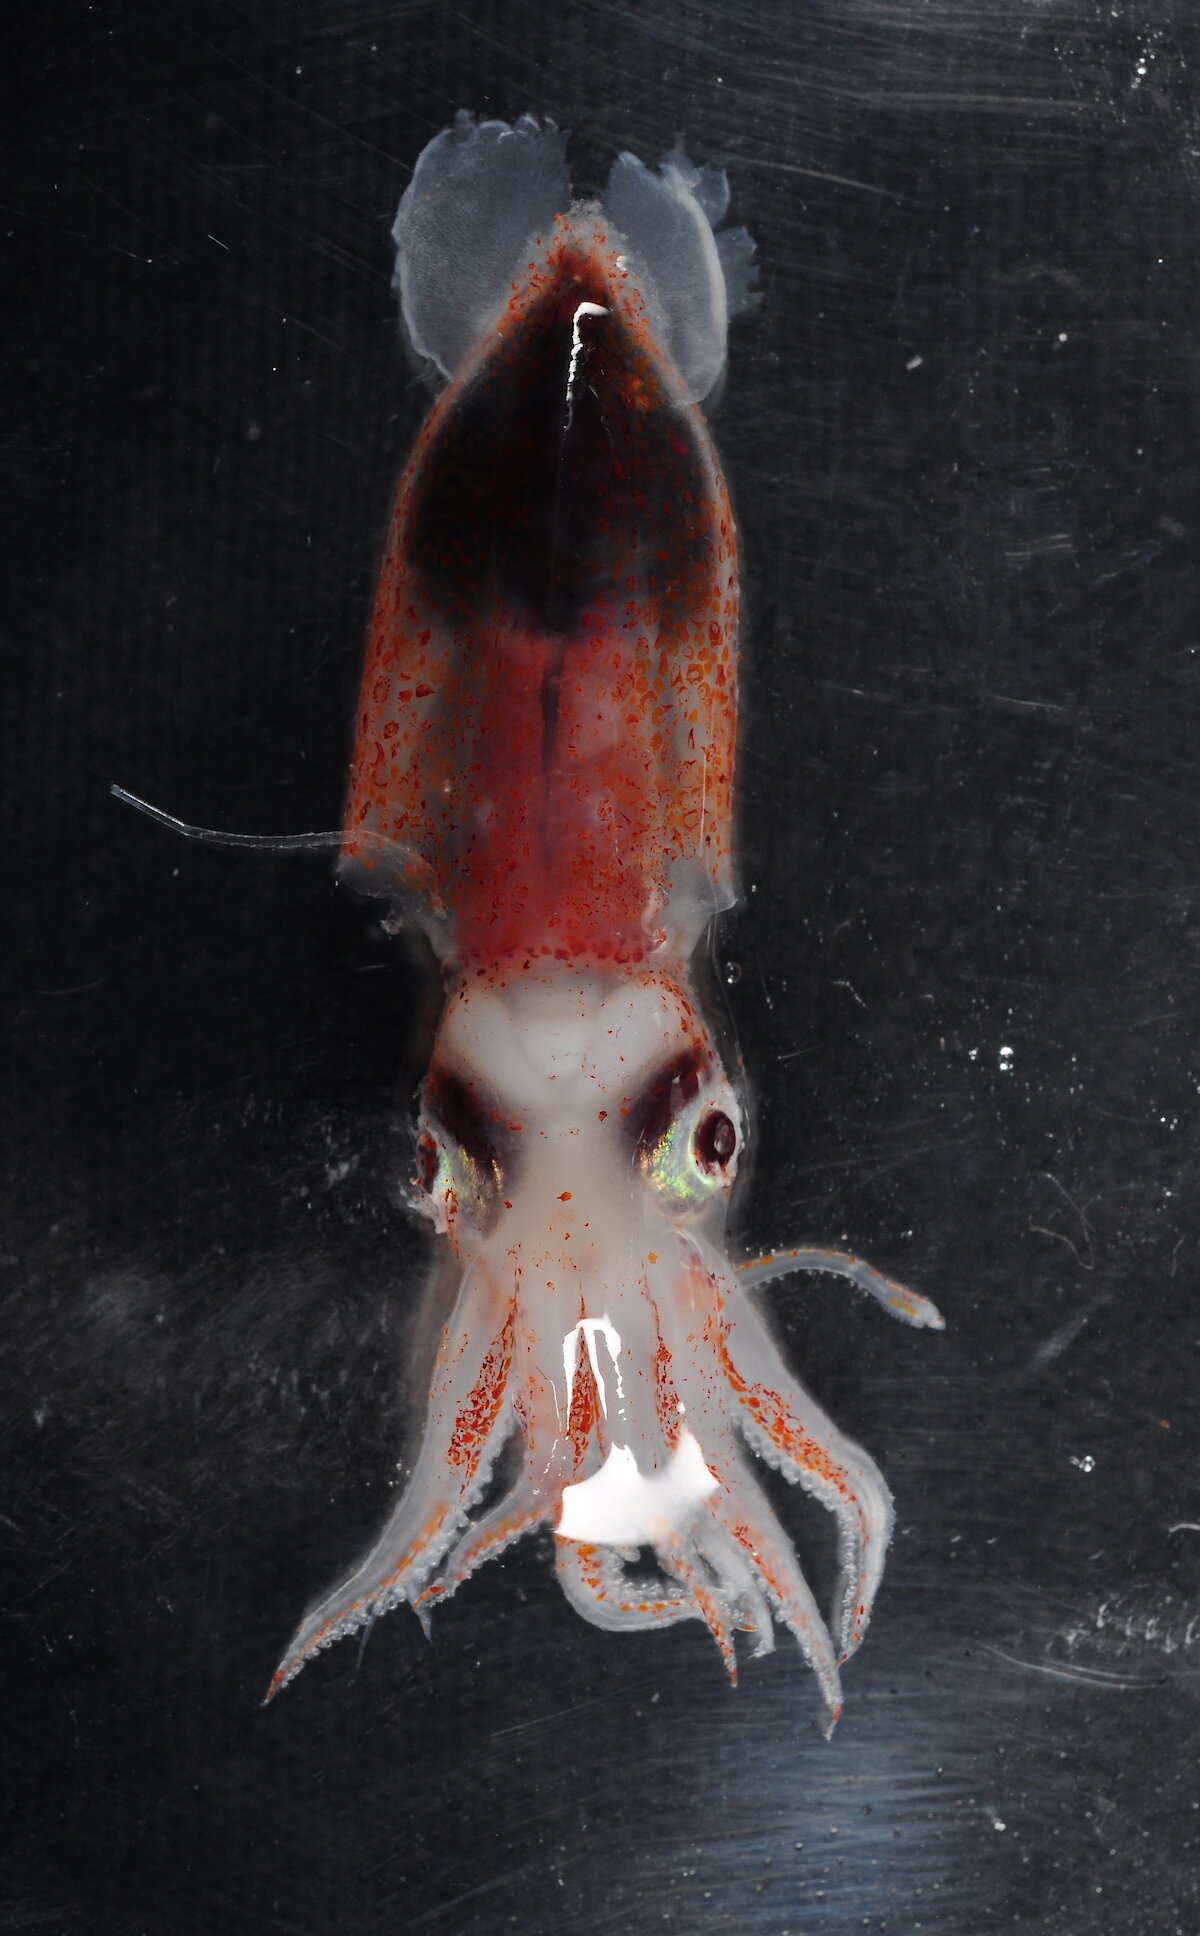 Squid – Australian Antarctic Program